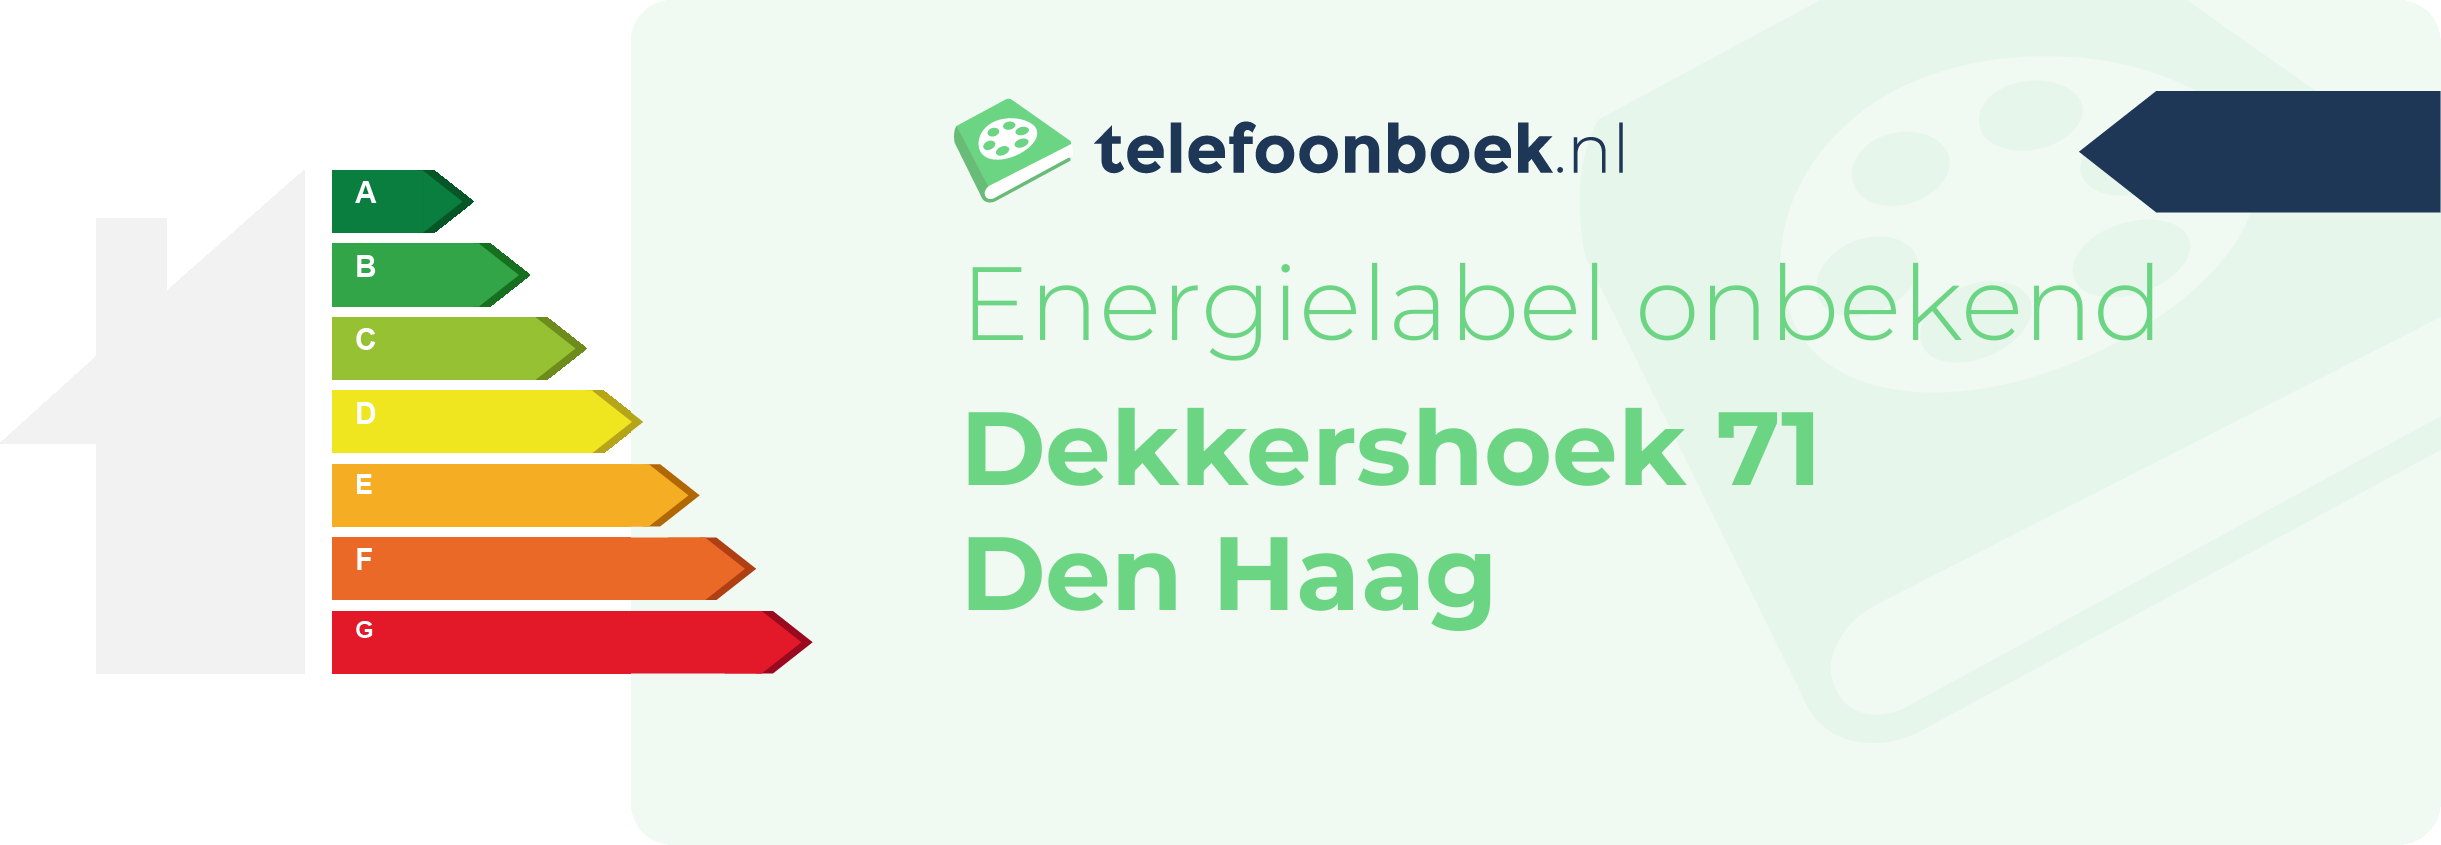 Energielabel Dekkershoek 71 Den Haag